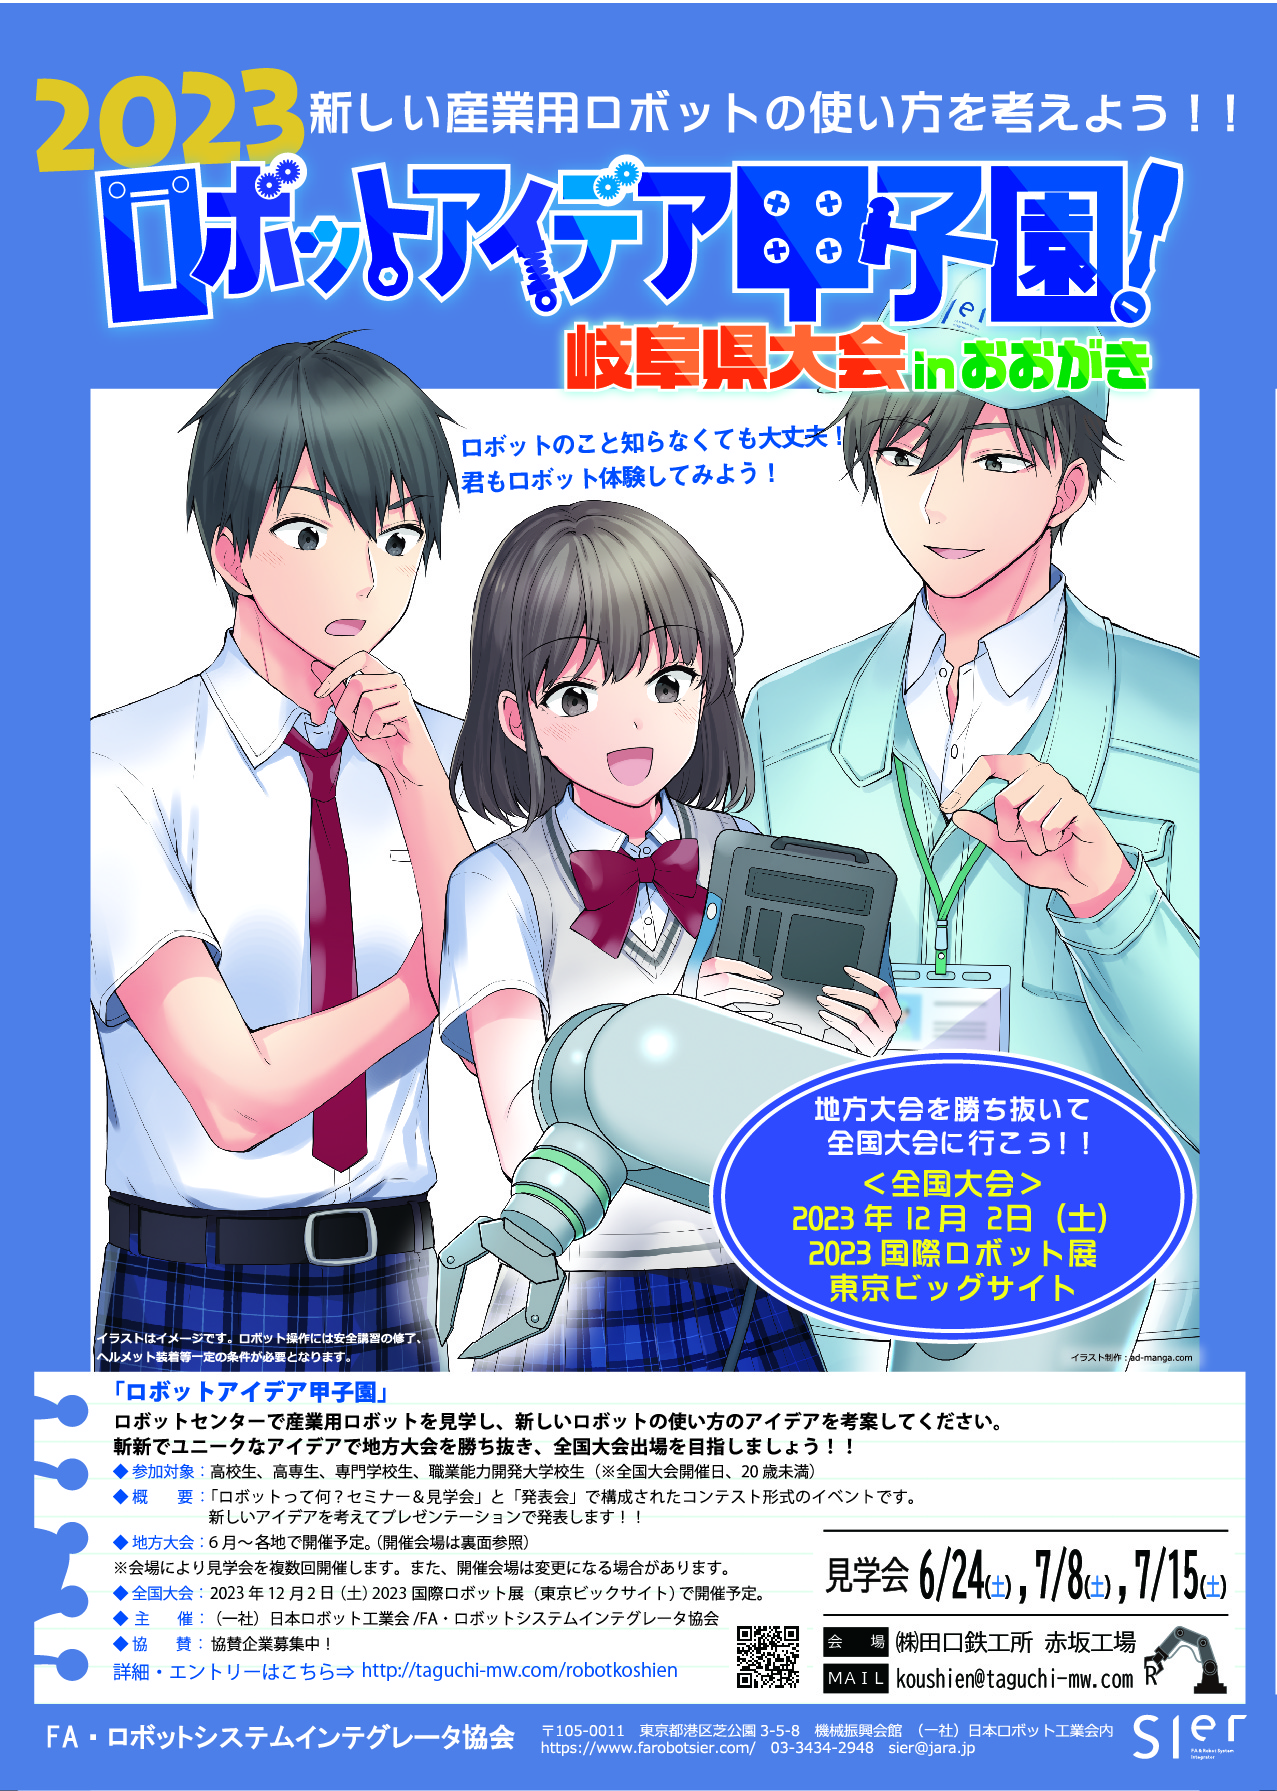 2023 ロボットアイデア甲子園 岐阜県大会